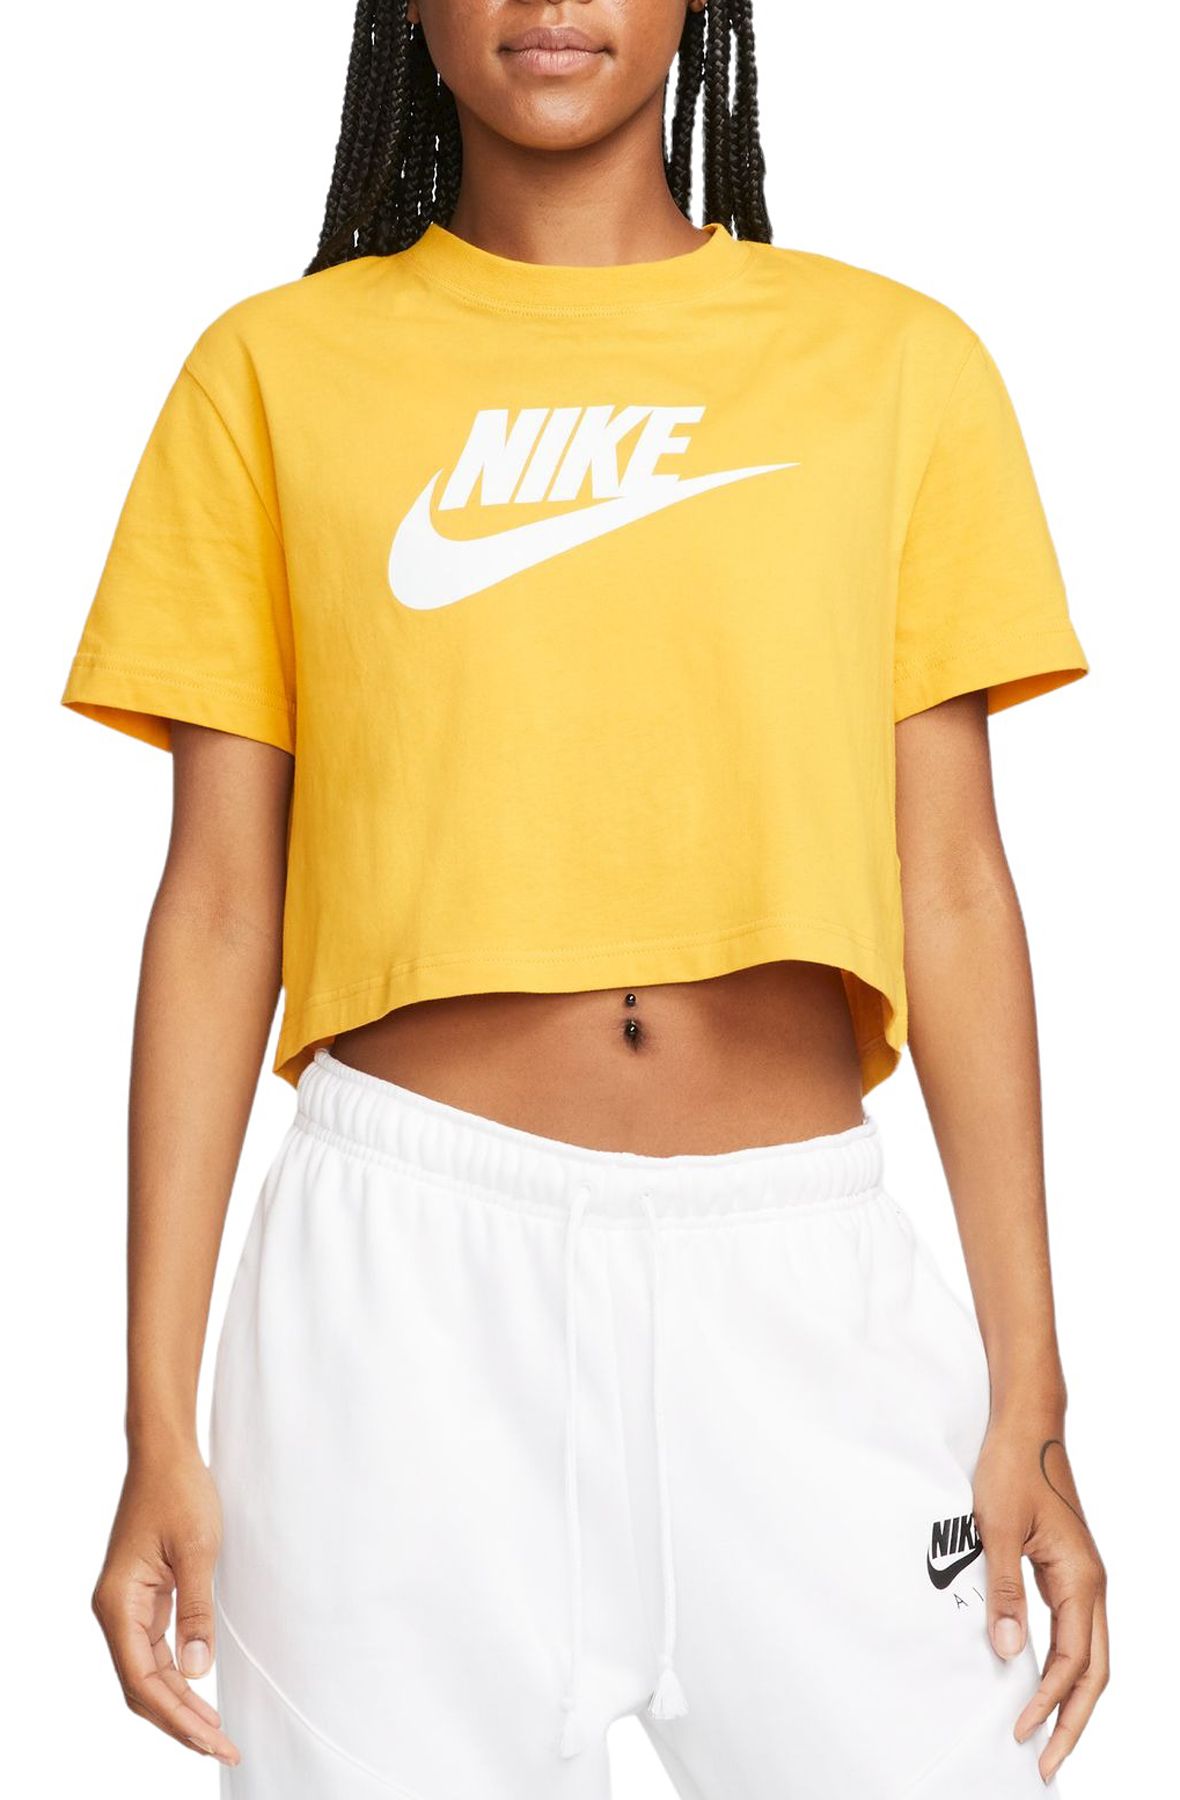 Women's Cropped Tops & T-Shirts. Nike UK